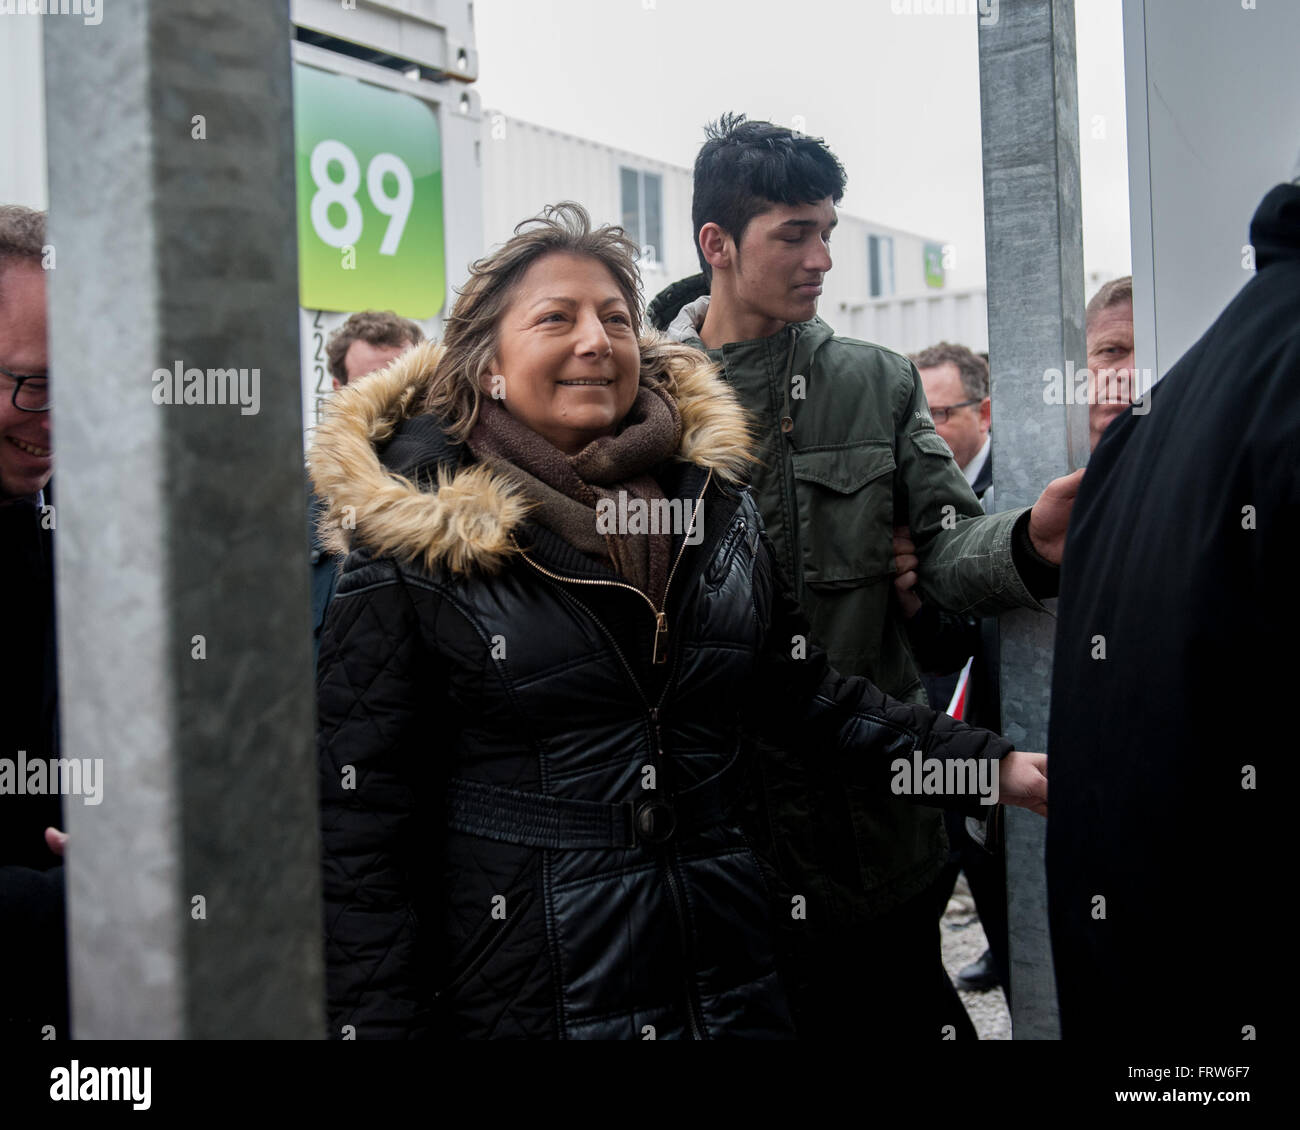 Natacha Bouchart, der Bürgermeister von Calais bei einem Besuch in der Container-Abschnitt des Flüchtlingslagers Dschungel von Calais in Nordfrankreich. Bouchard hielt eine Pressekonferenz zur Förderung der Nutzung der umstrittenen "Container" in einem umzäunten Bereich neben der wichtigsten cam Stockfoto